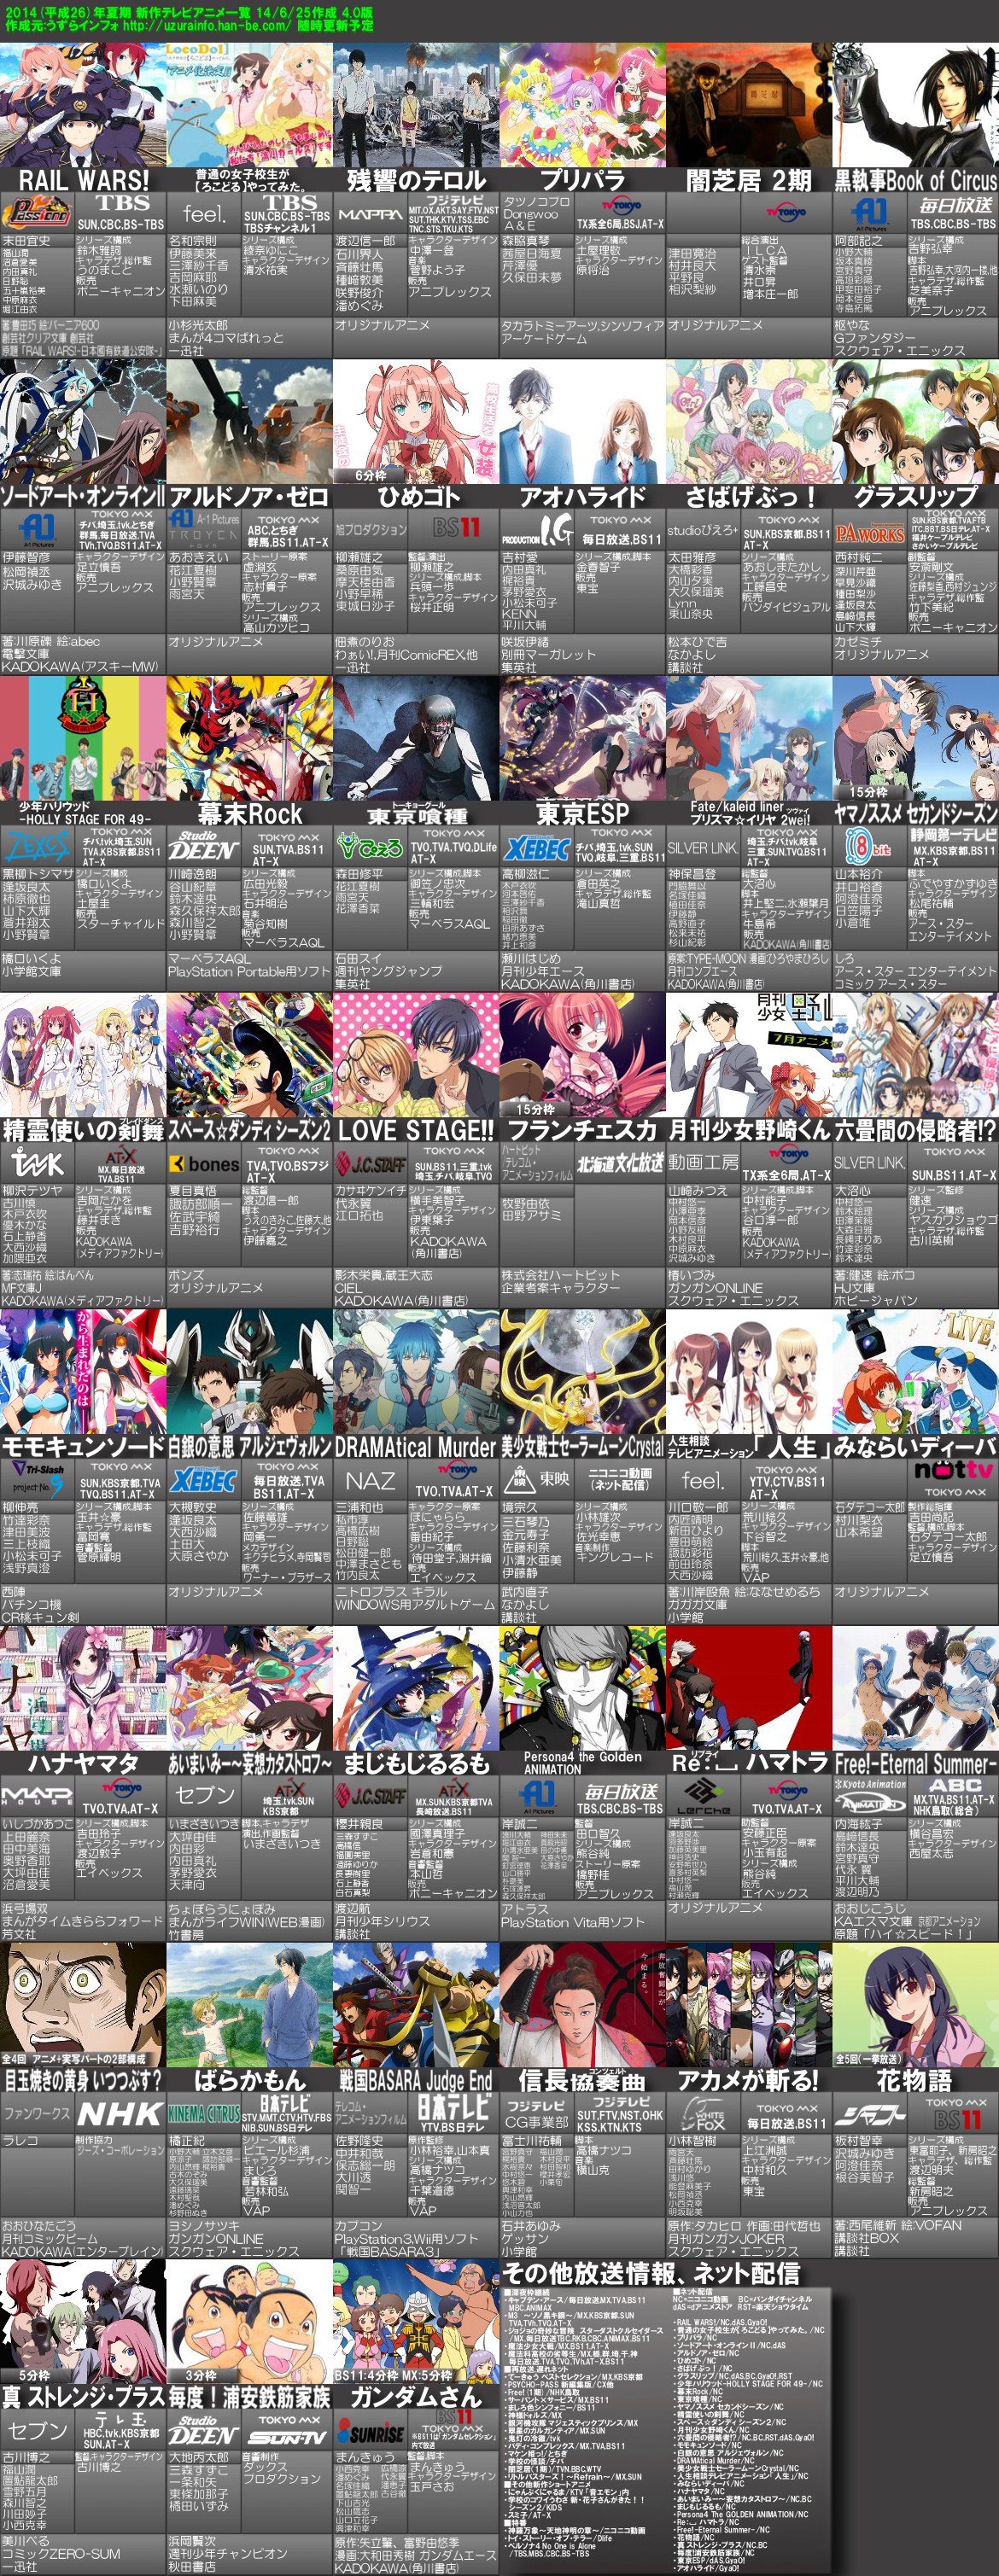 14 年 7 月 アニメ Uudavidae8 S Blog